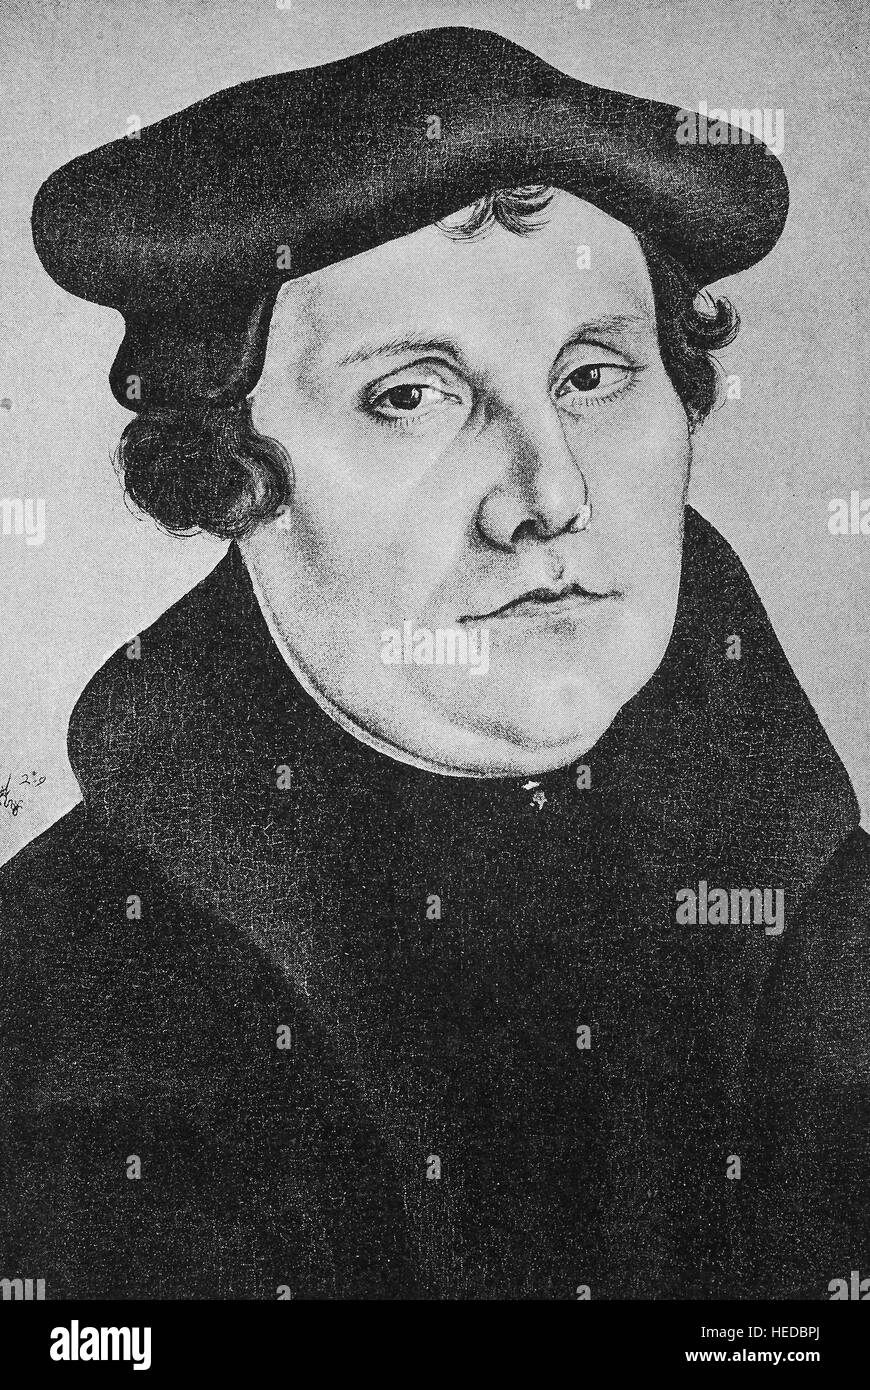 Martin Luther, 1483-1546, un professeur de théologie, compositeur, prêtre, moine et une figure dans la Réforme protestante, à partir d'une gravure sur bois de 1880, l'amélioration numérique Banque D'Images